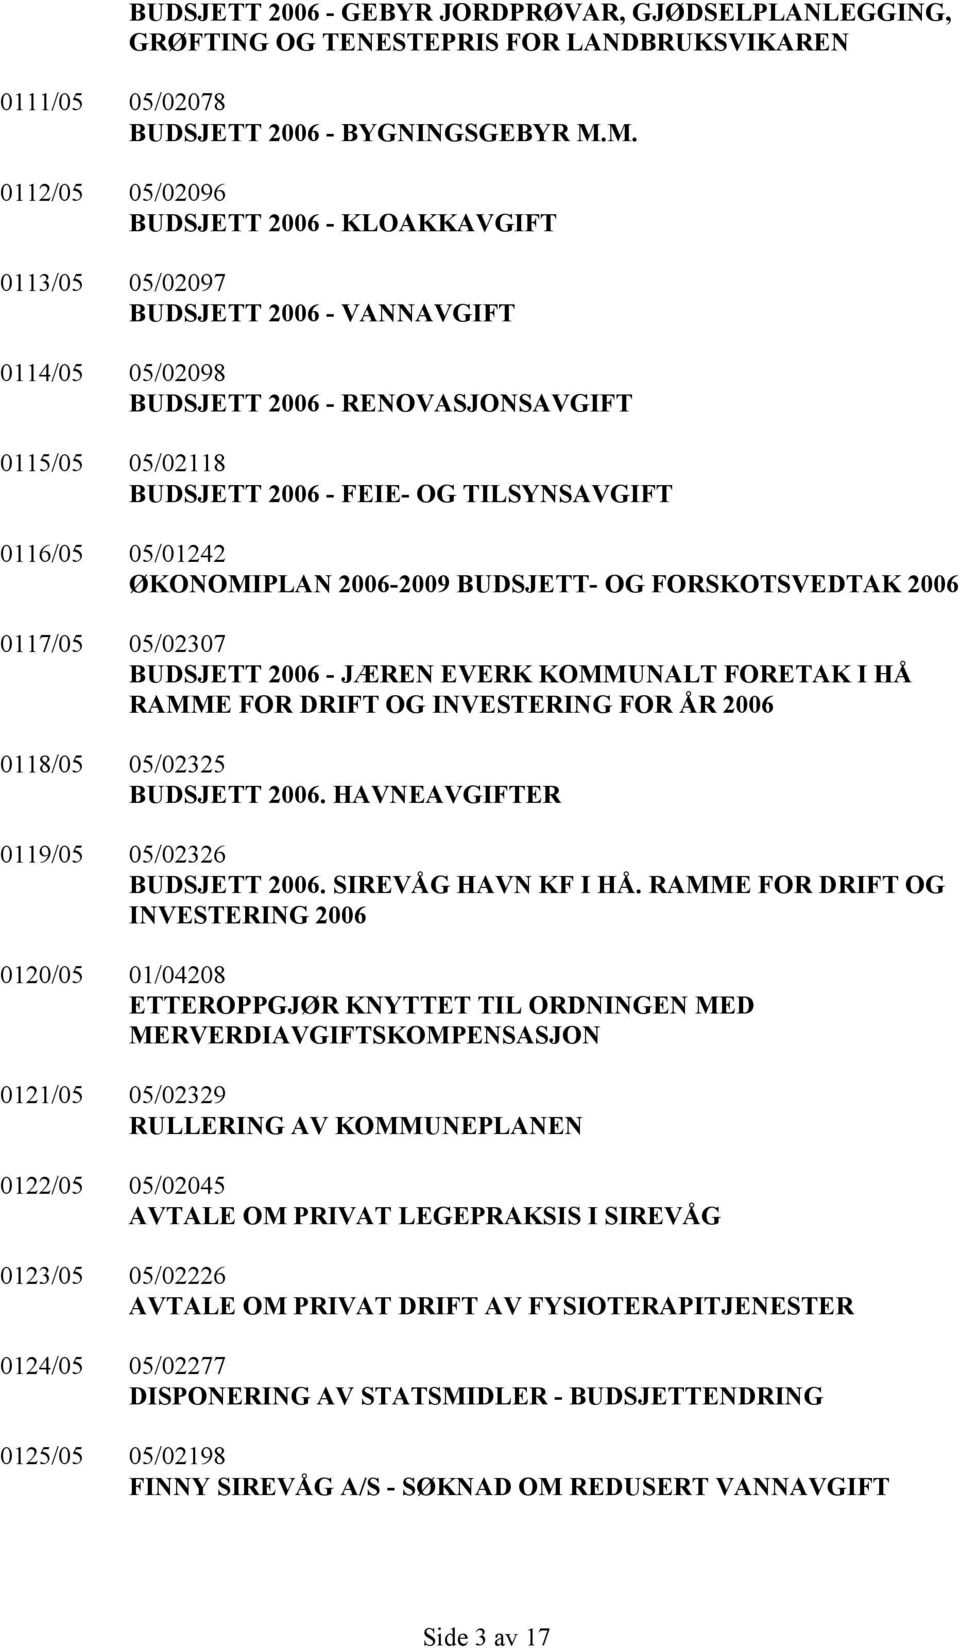 0116/05 05/01242 ØKONOMIPLAN 2006-2009 BUDSJETT- OG FORSKOTSVEDTAK 2006 0117/05 05/02307 BUDSJETT 2006 - JÆREN EVERK KOMMUNALT FORETAK I HÅ RAMME FOR DRIFT OG INVESTERING FOR ÅR 2006 0118/05 05/02325